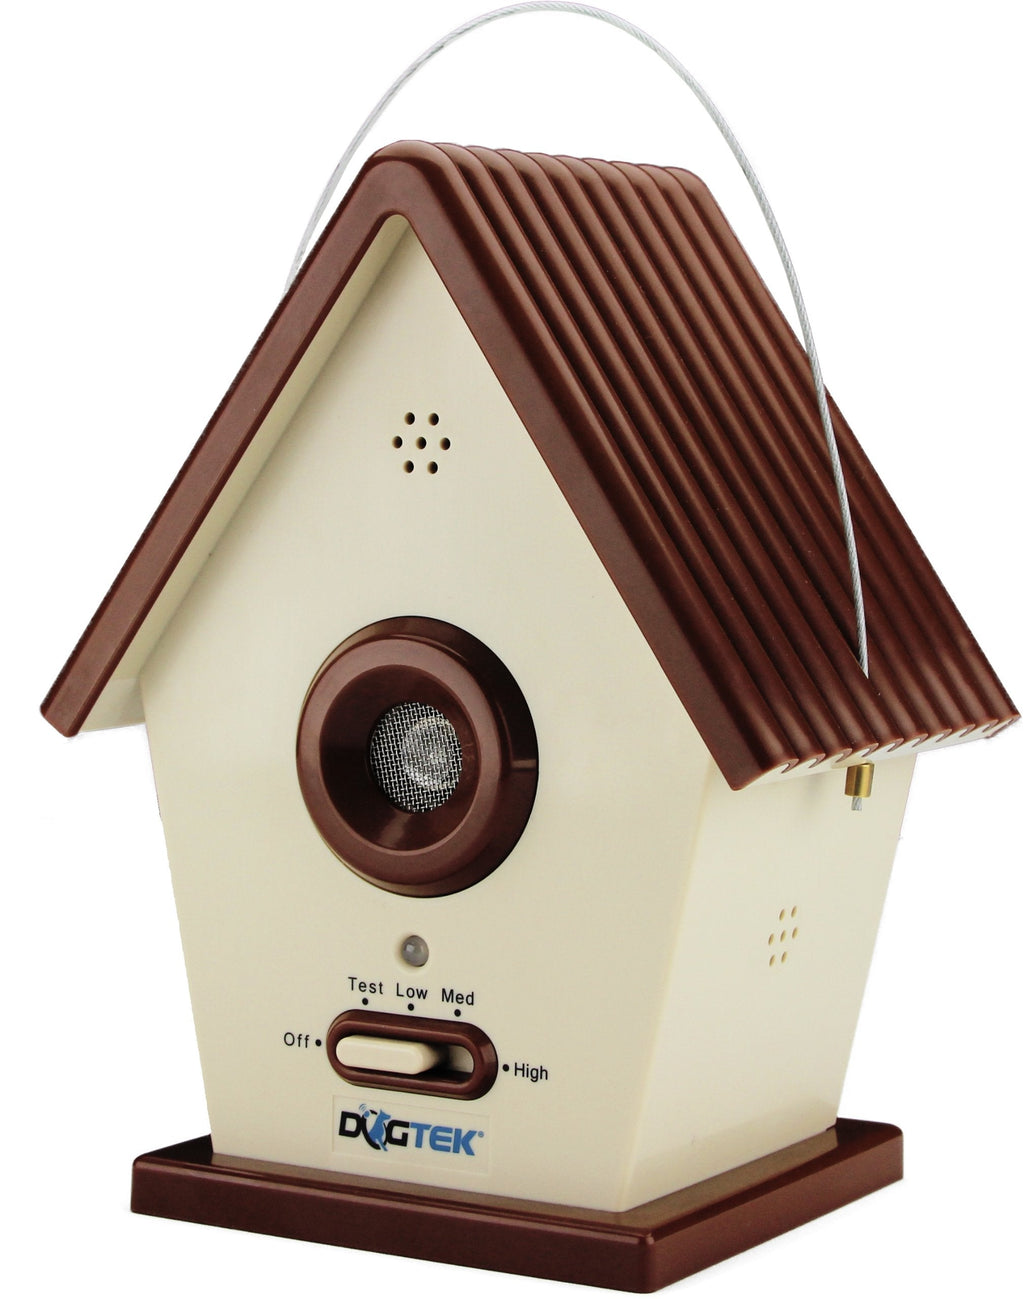 Dogtek Sonic Bird House Bark Control Outdoor/Indoor - New Version - PawsPlanet Australia